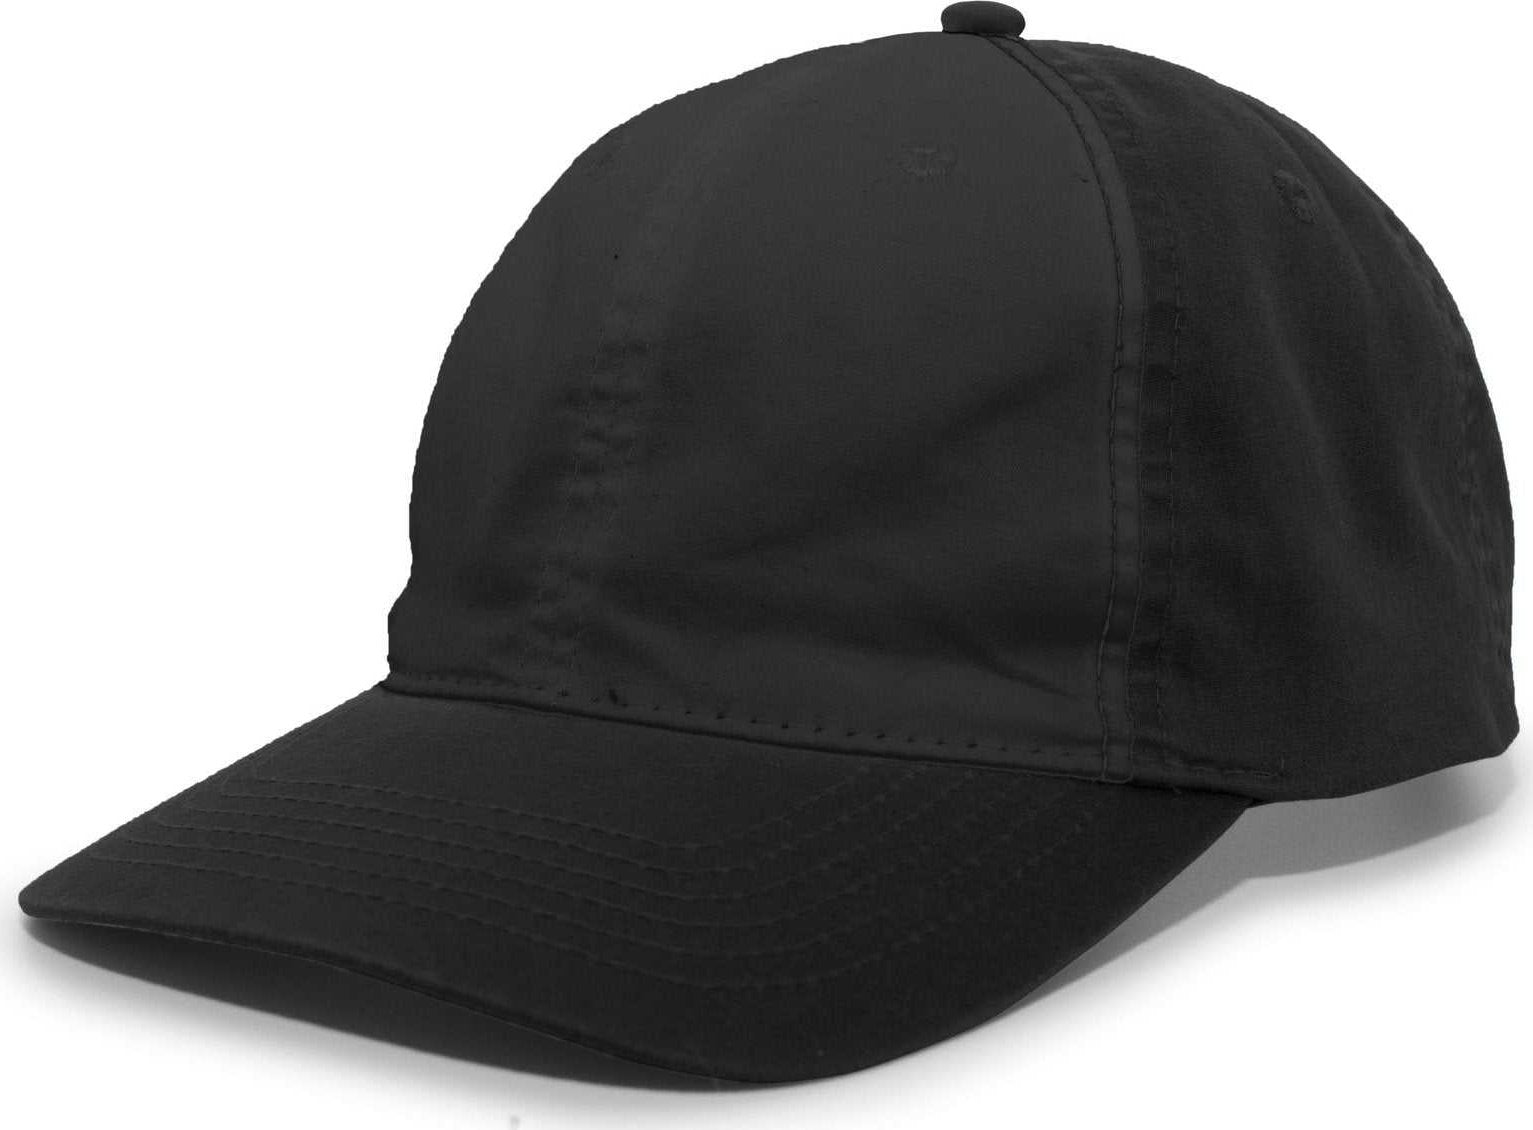 Pacific Headwear V57 Vintage Cotton Buckle Back Cap - Black - HIT a Double